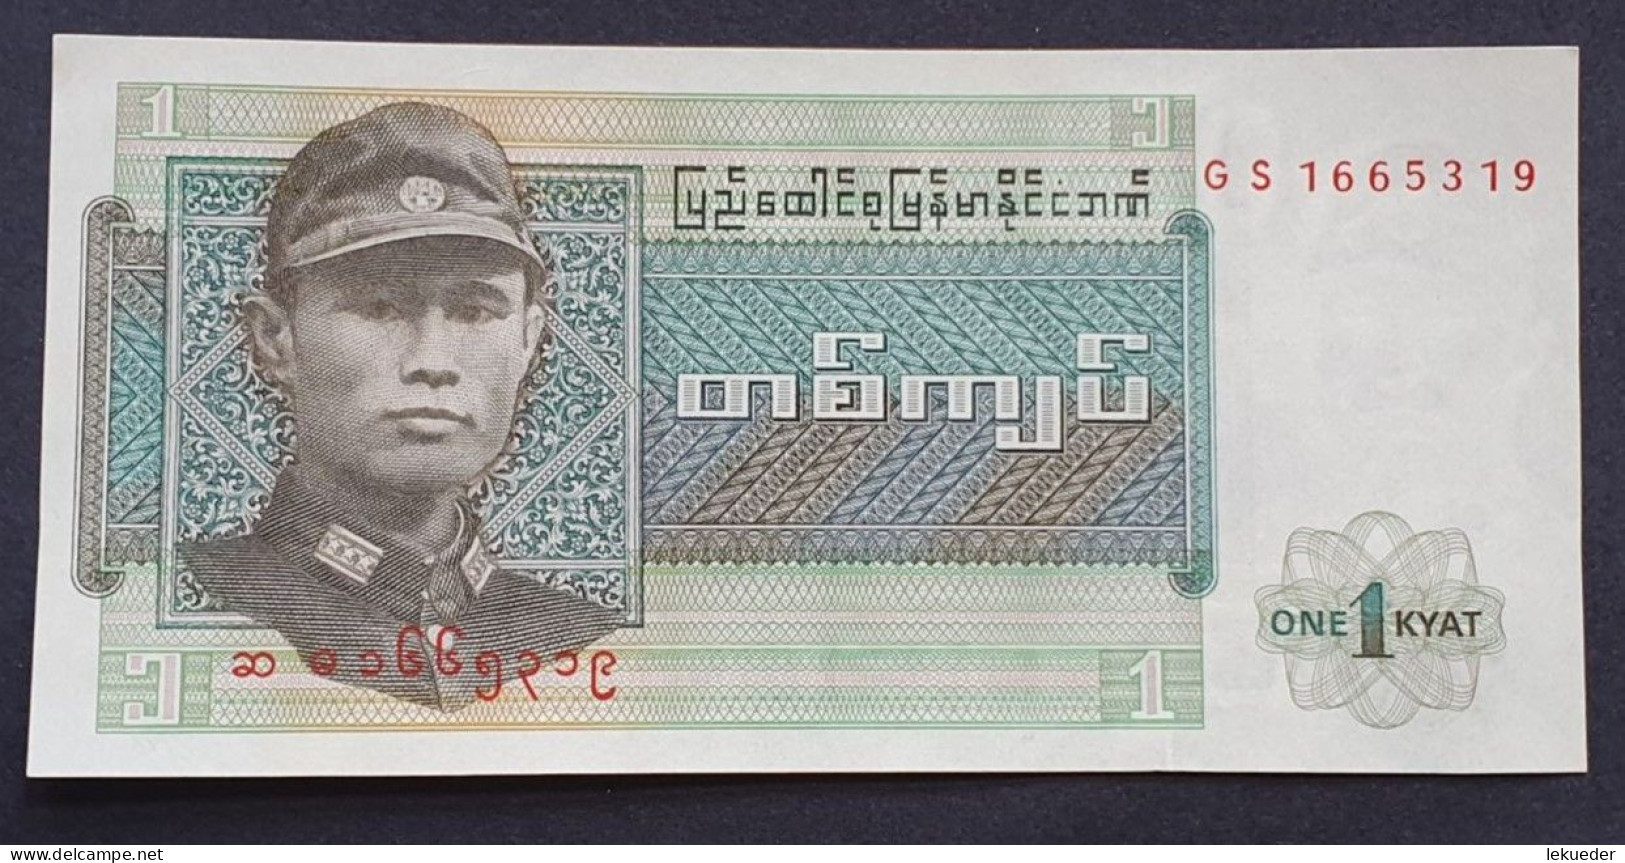 Billete De Banco De MYANMAR (Birmania-Burma) - 1 Kyats, 1973  Sin Cursar - Myanmar